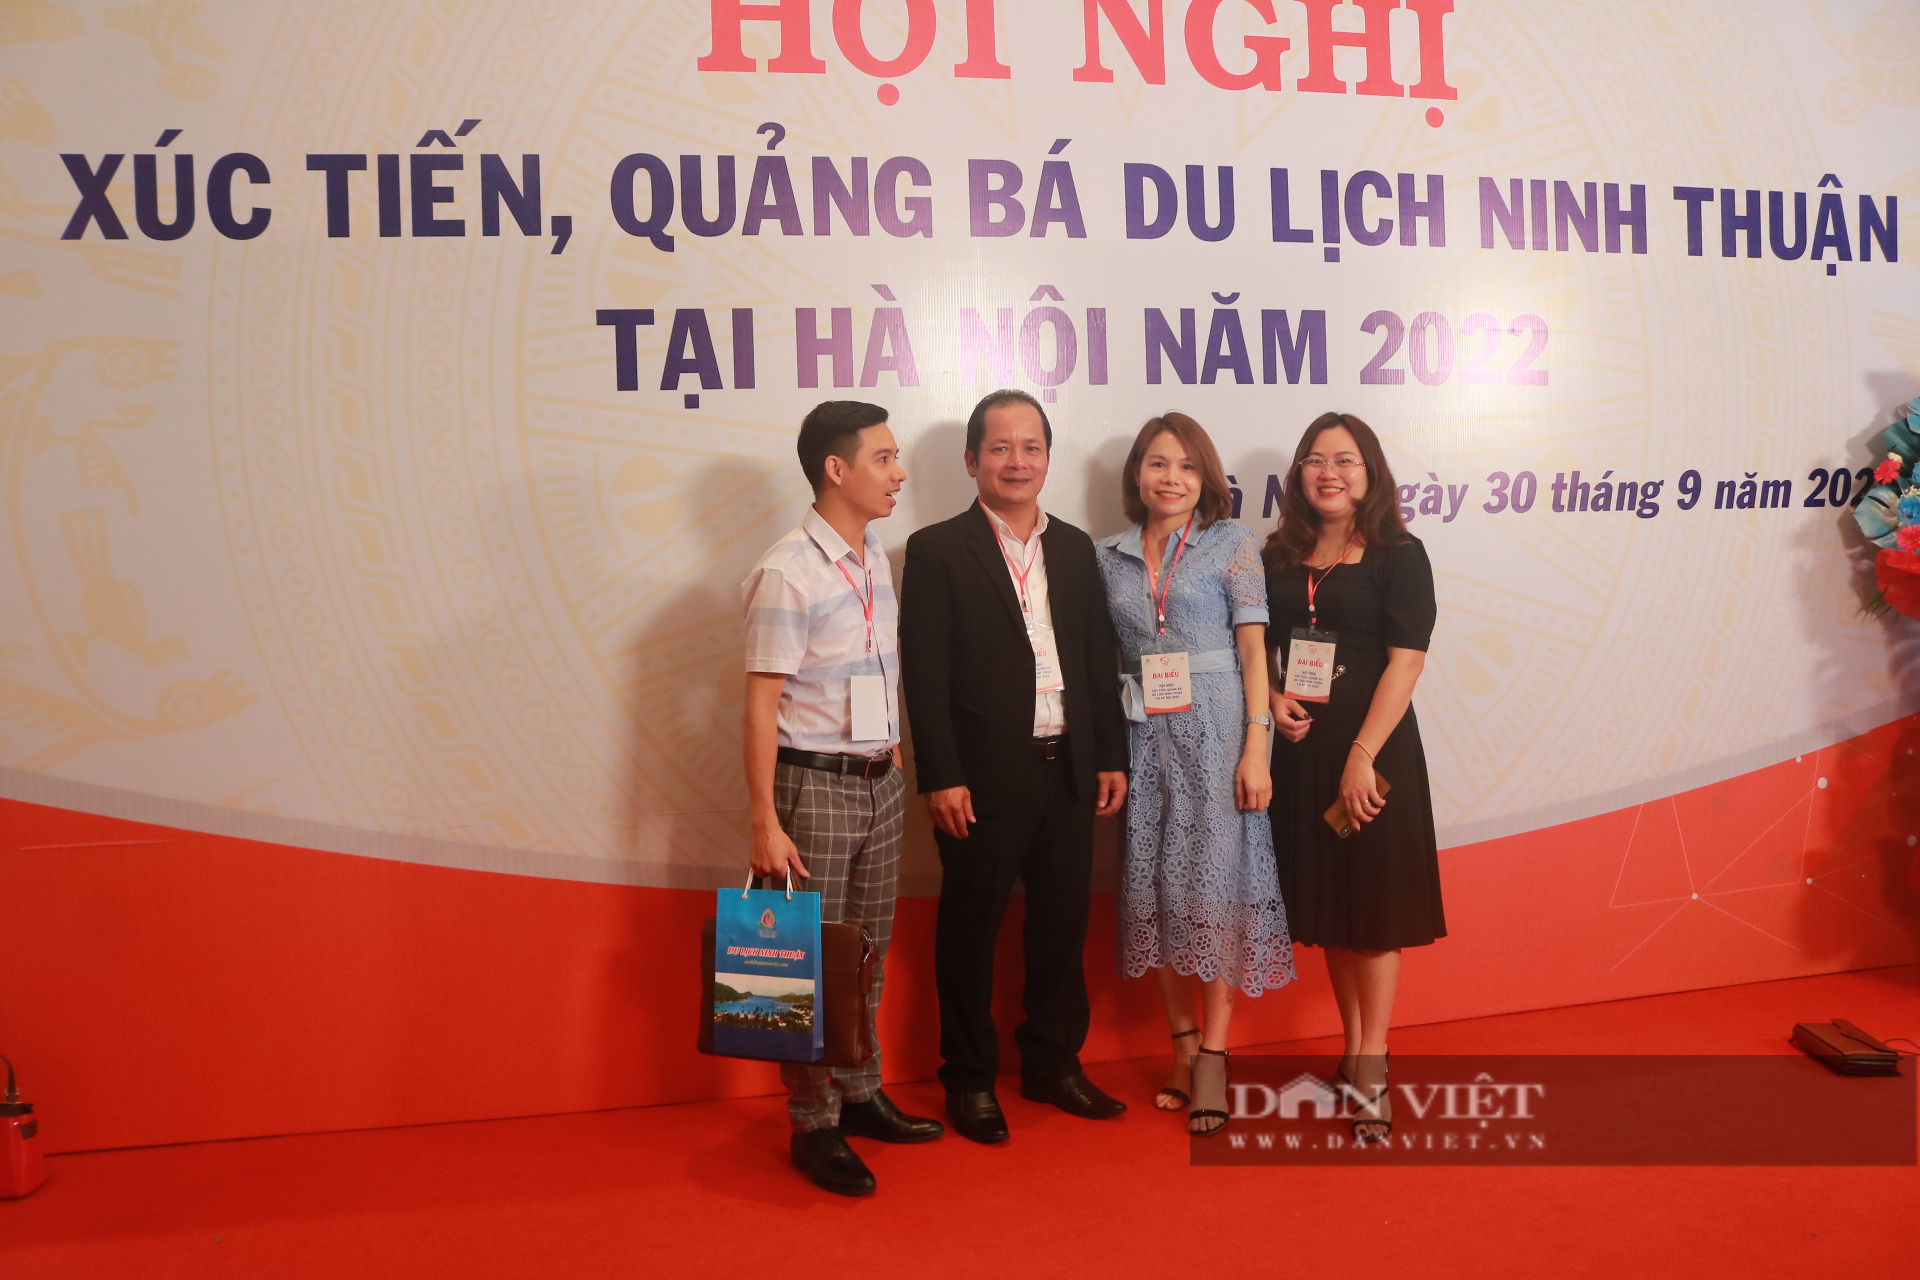 Ninh Thuận – Hà Nội “bắt tay” nhau cùng phát triển du lịch bền vững - Ảnh 4.